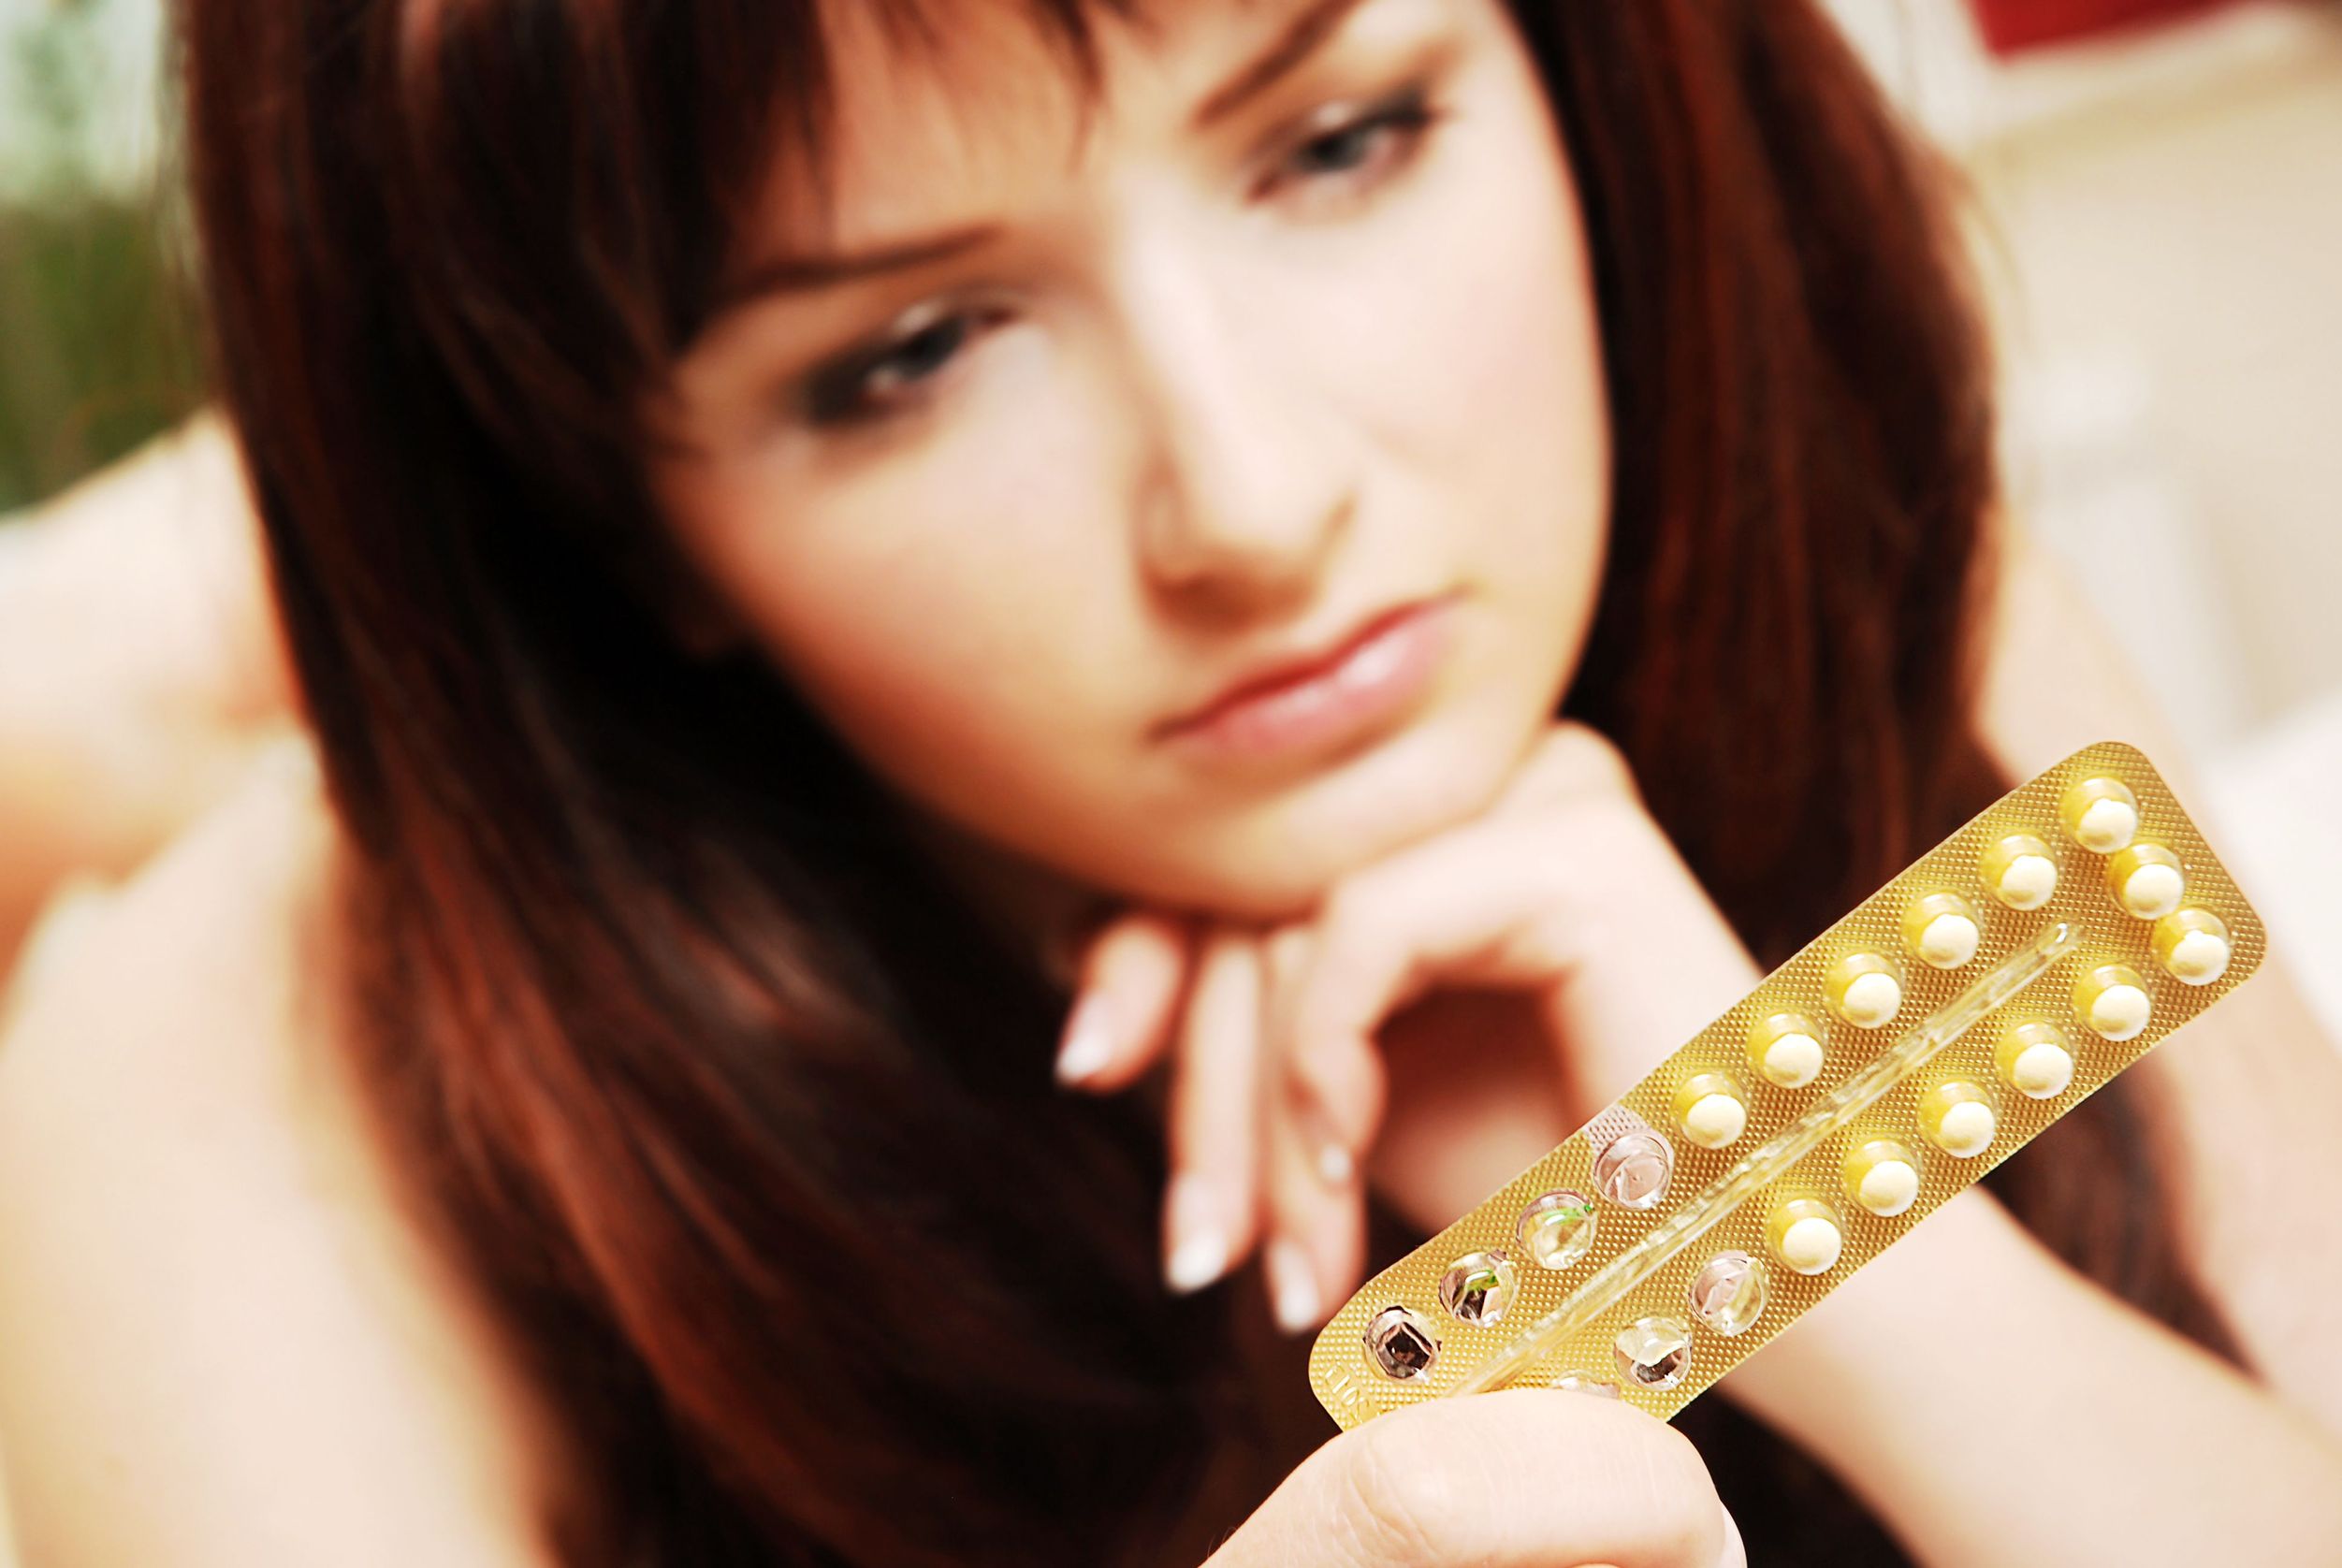 woman looking at birth control